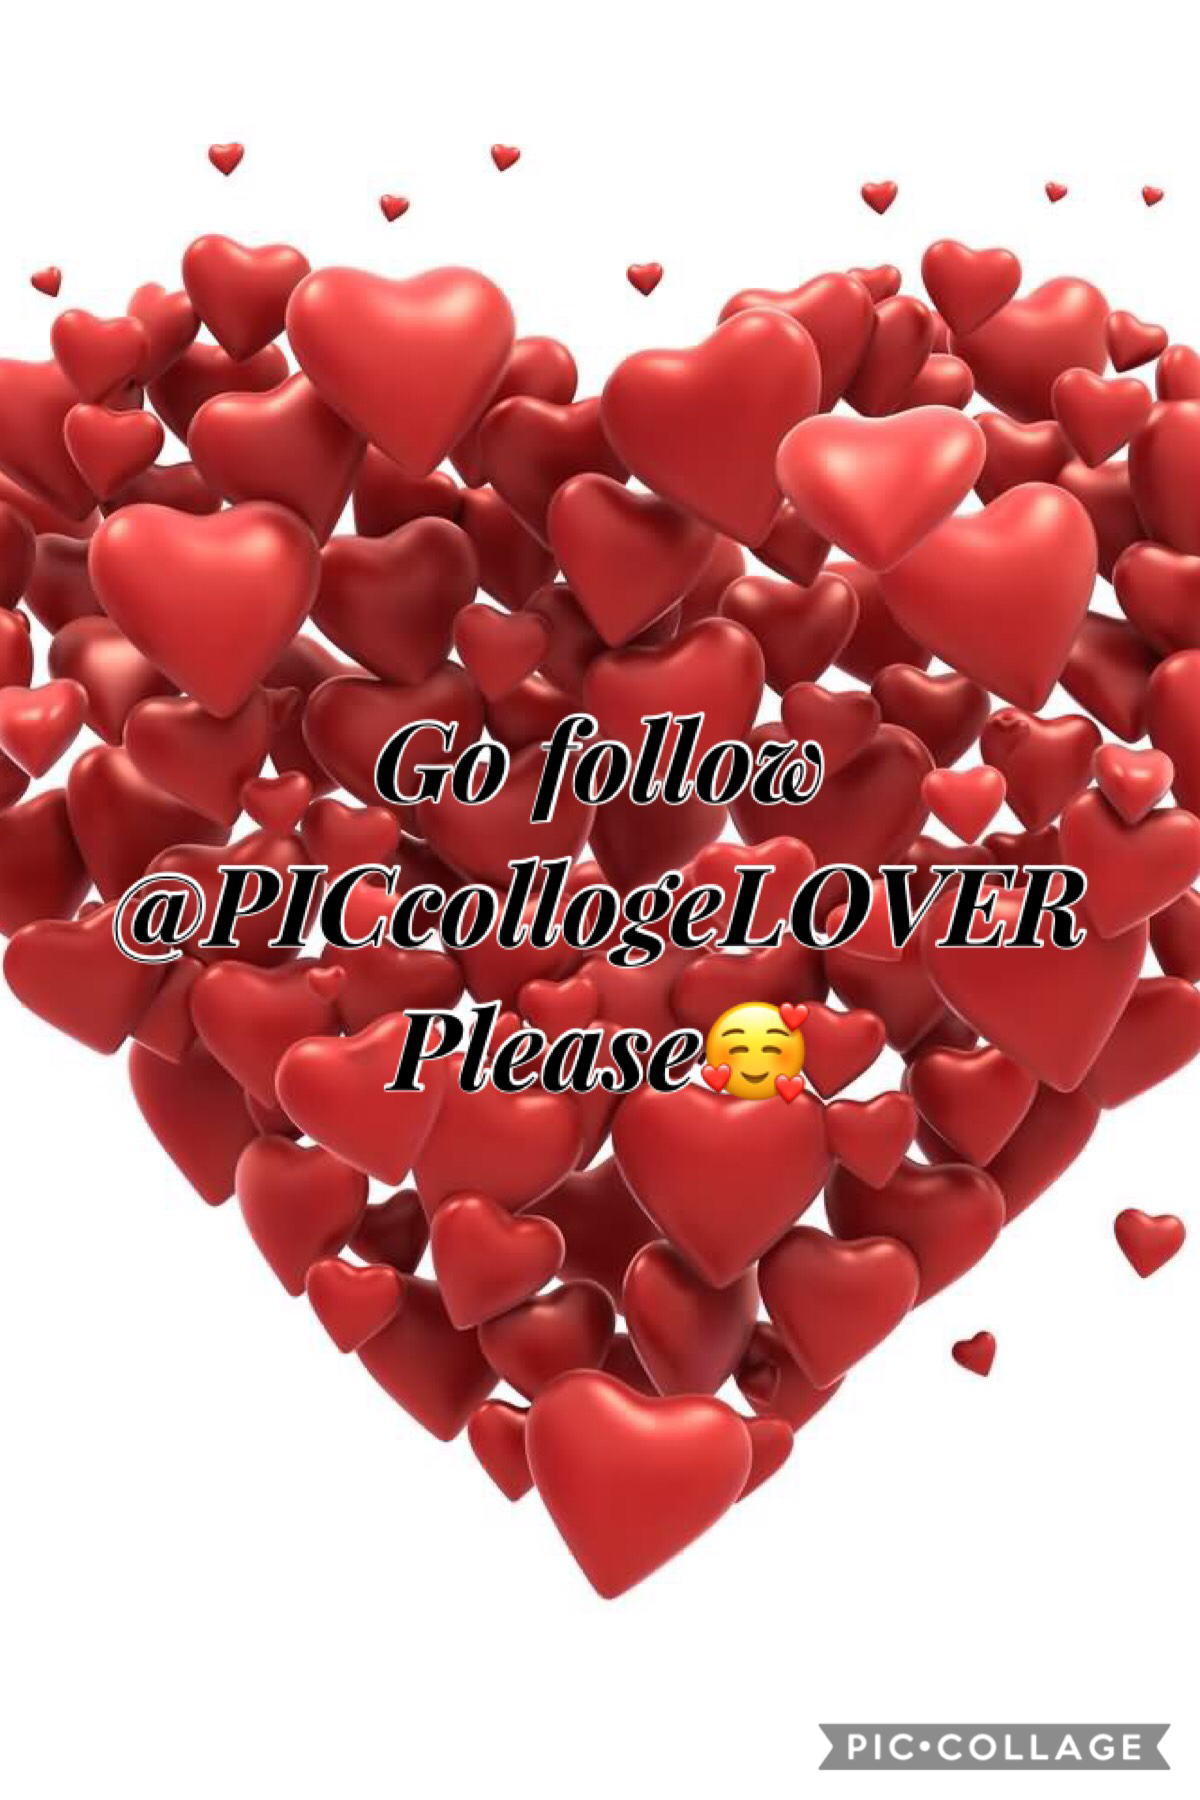 Go follow @PICcollogeLOVER
❤️